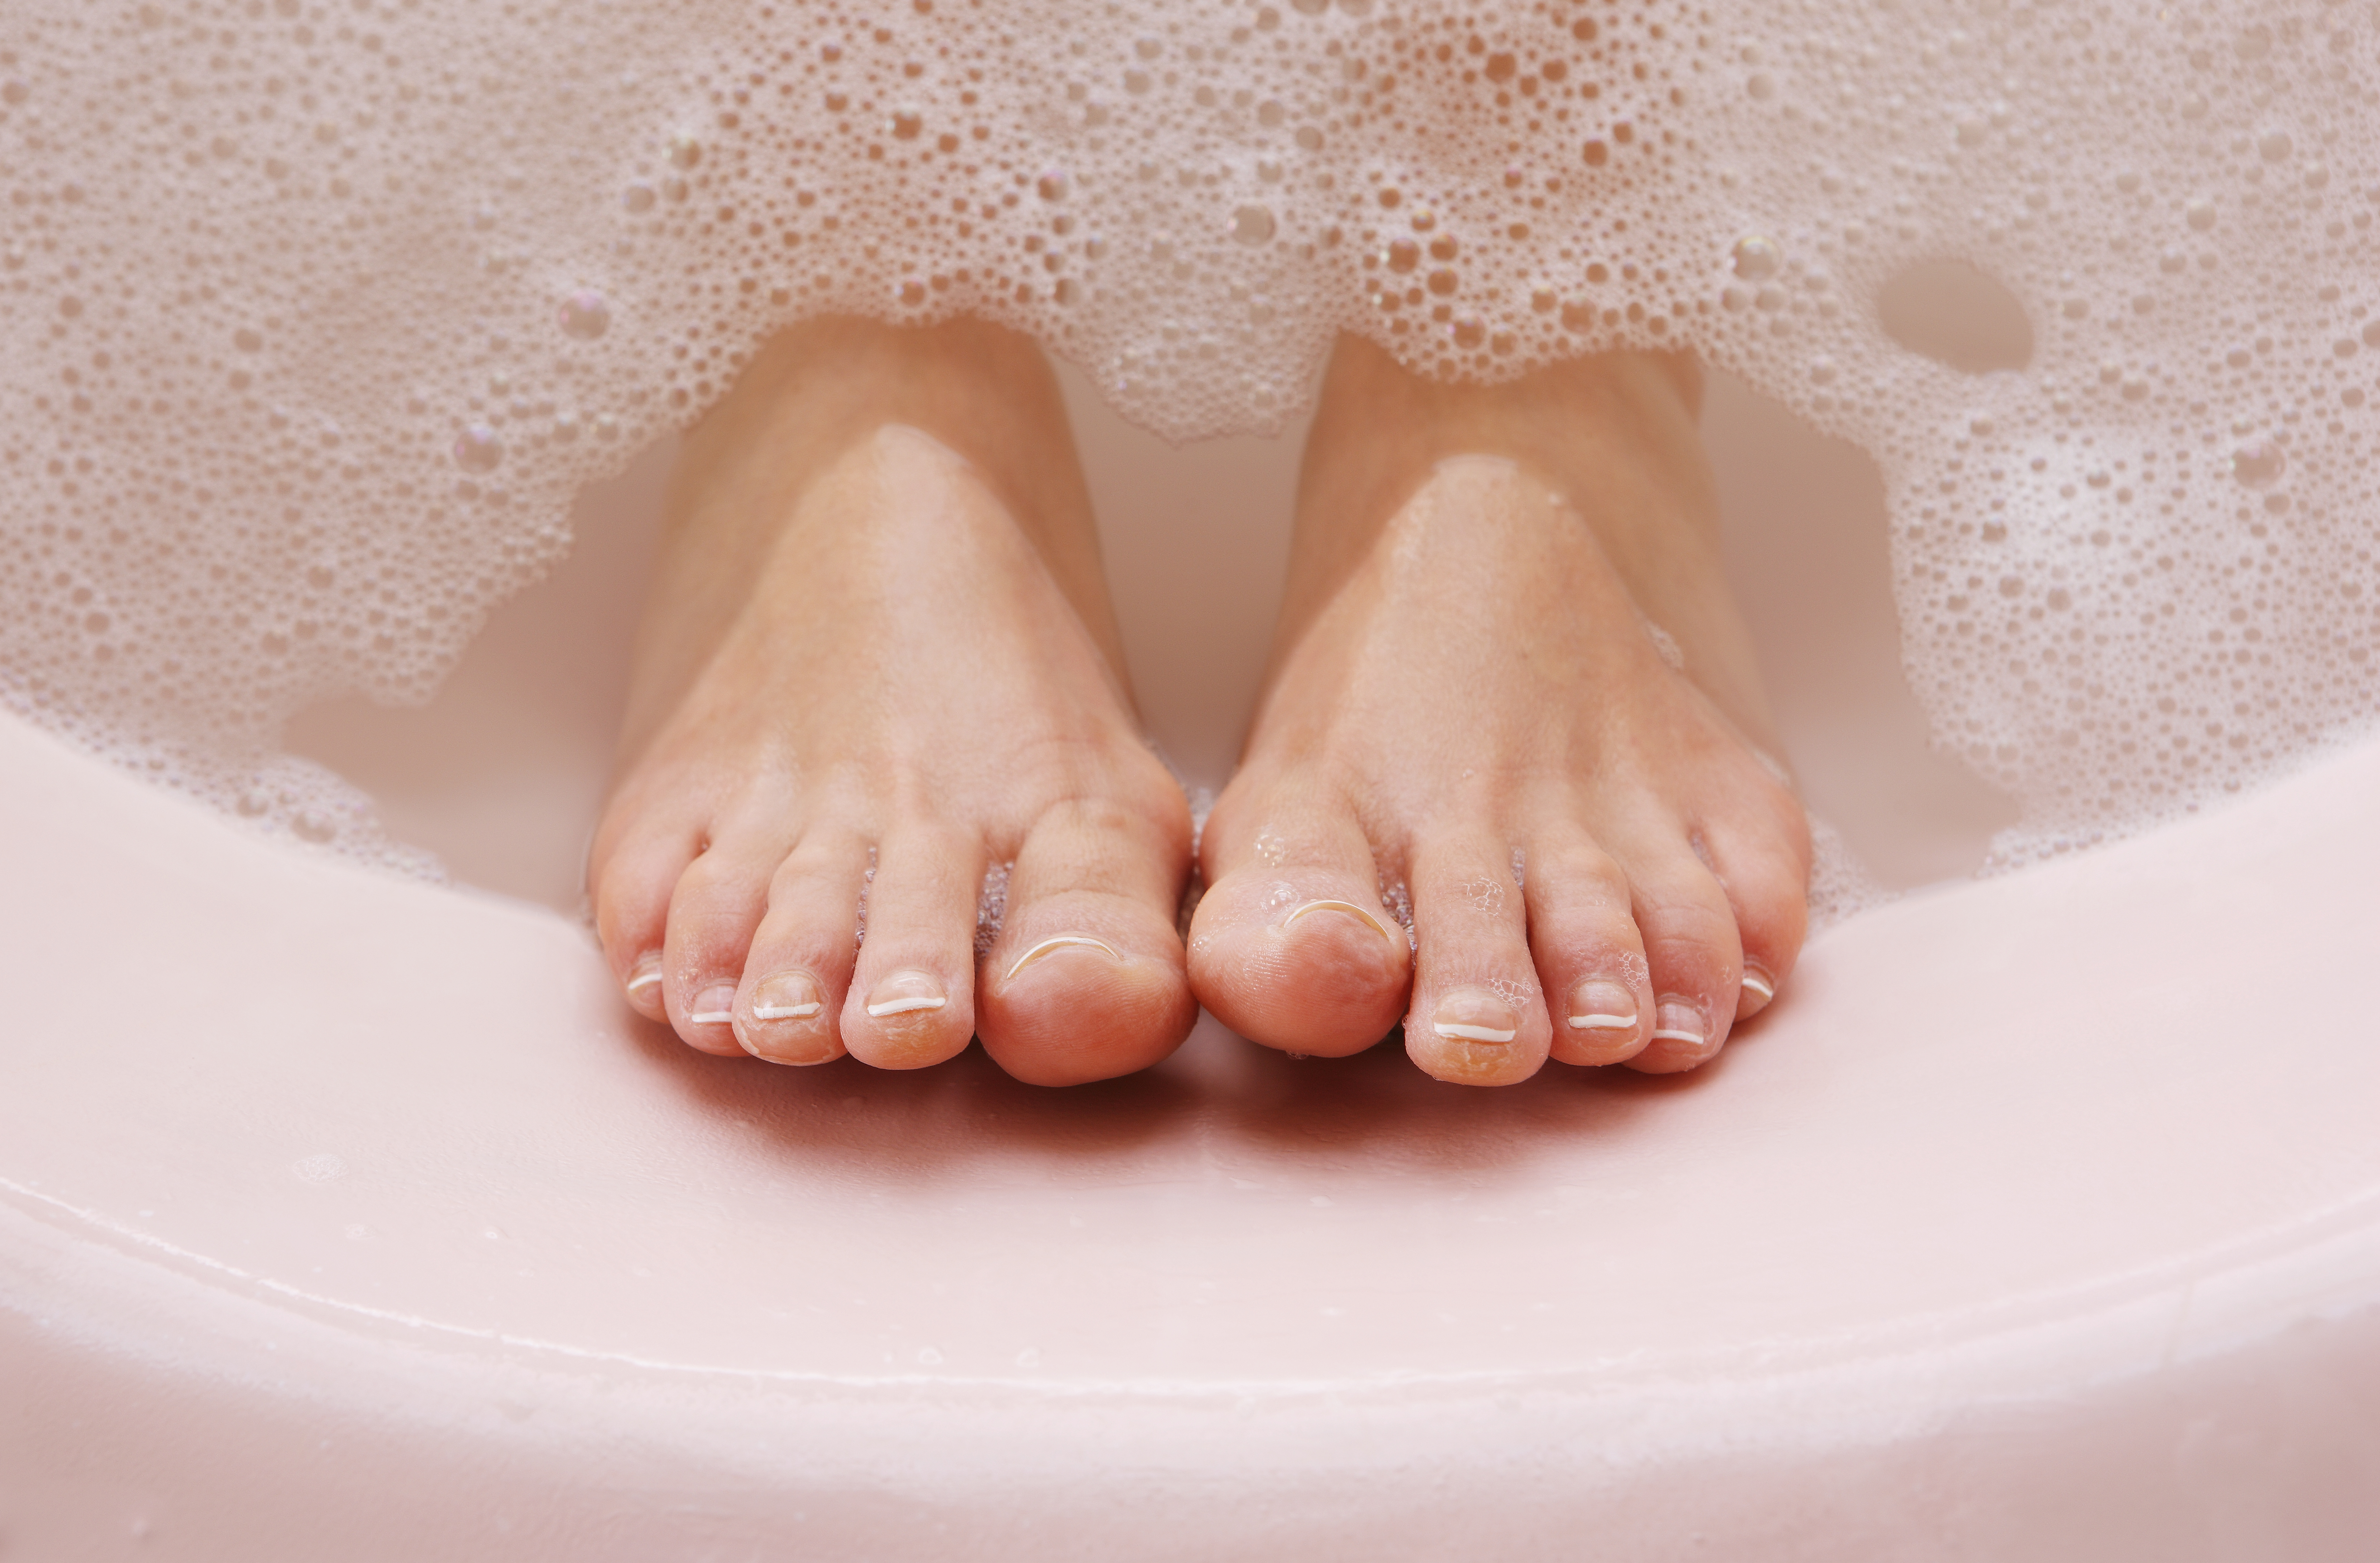 foot soak for dry skin